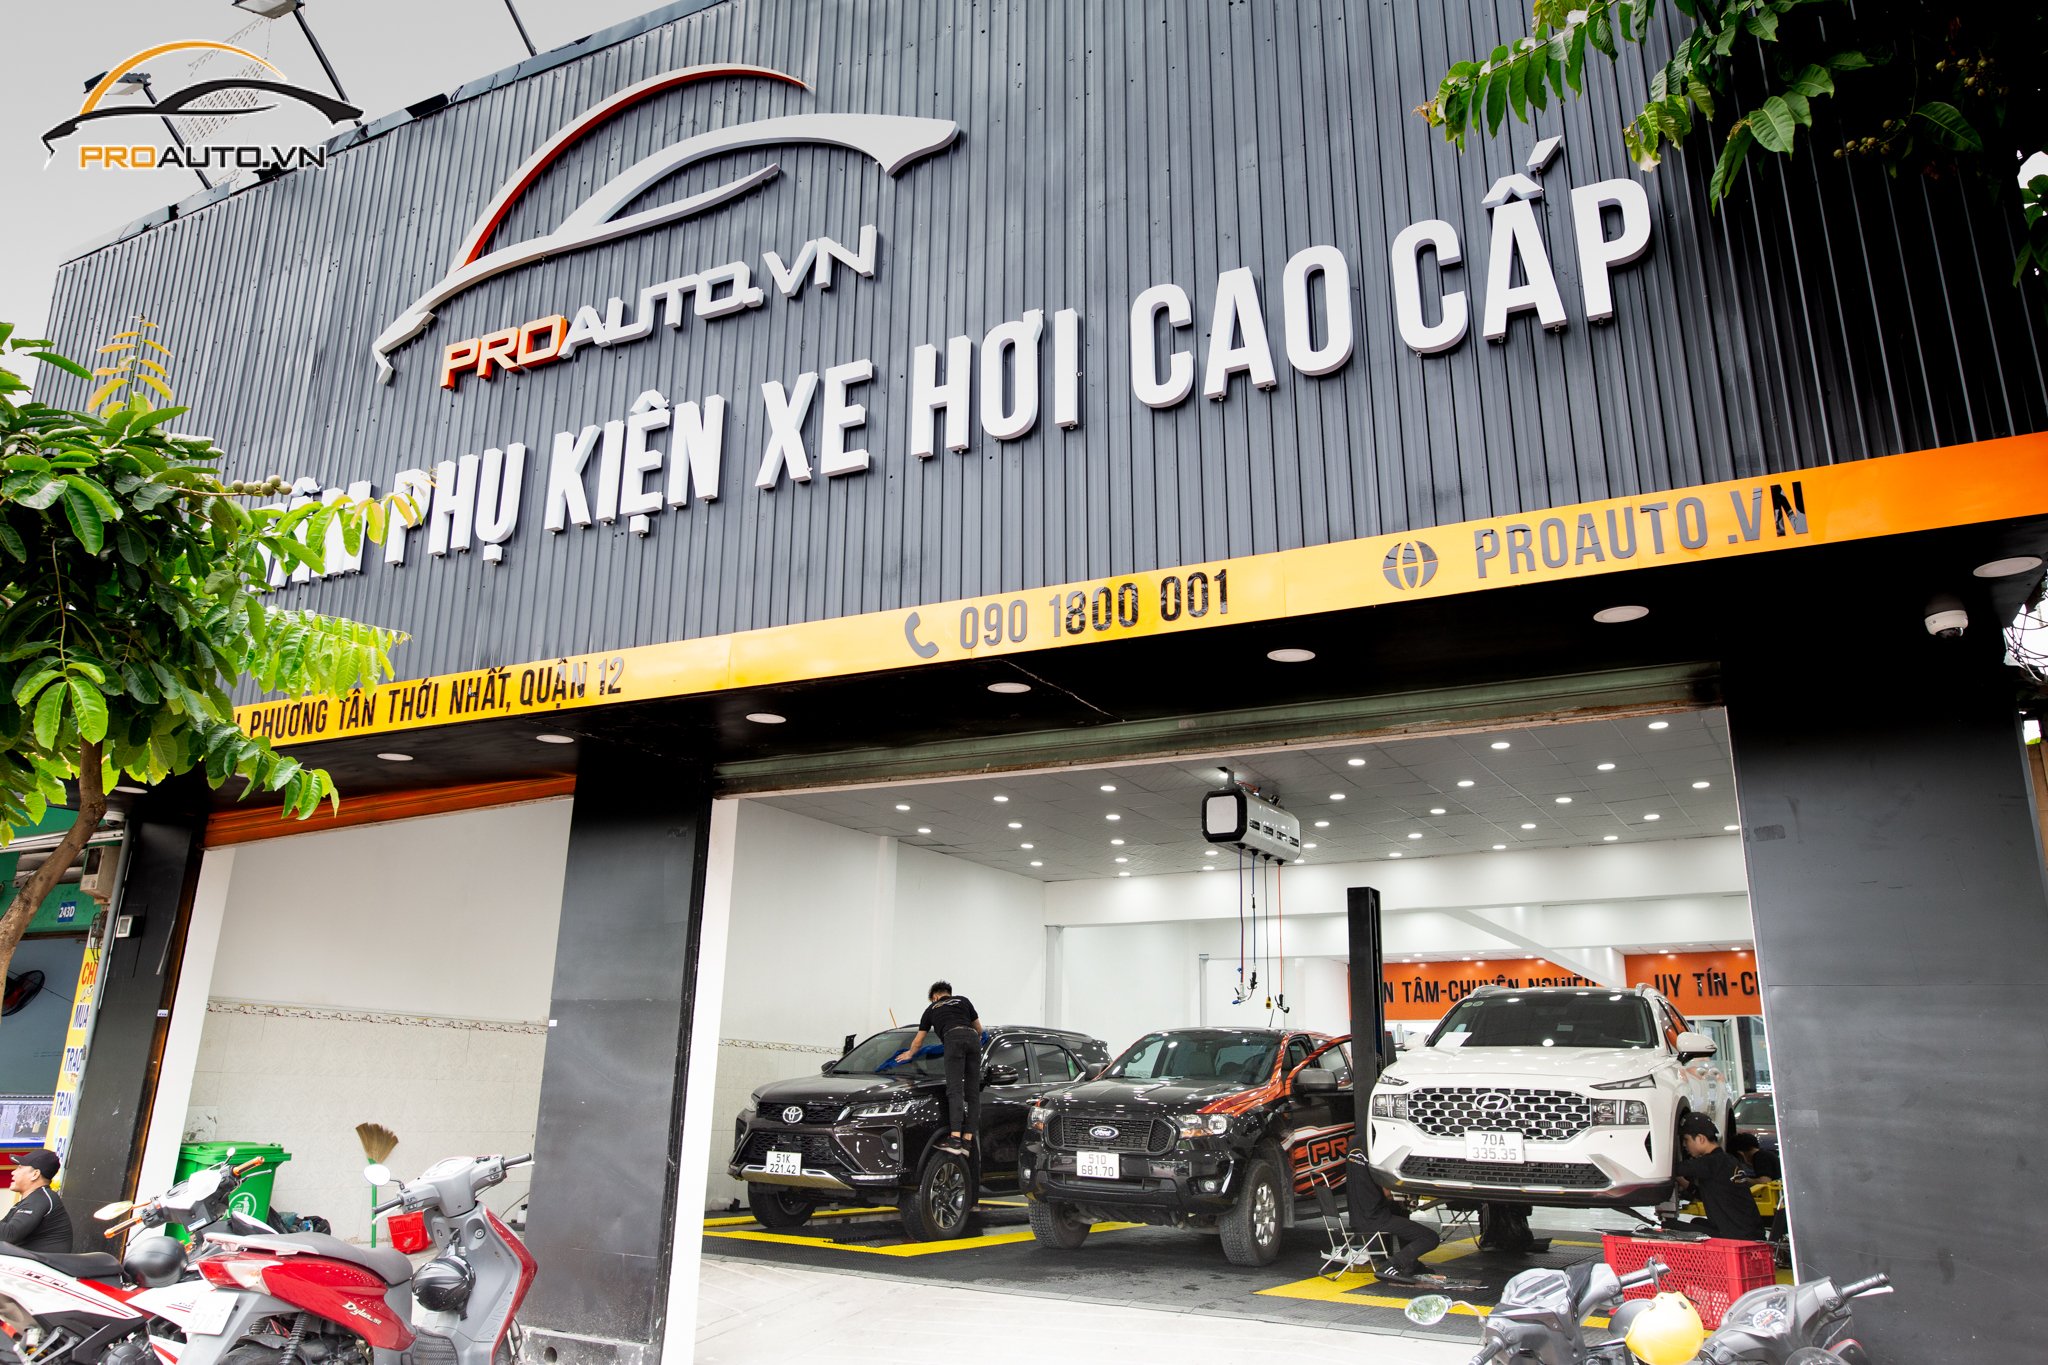 Proauto.vn - Trung tâm phụ kiện đồ chơi xe hơi uy tín tại TP. Hồng Ngự